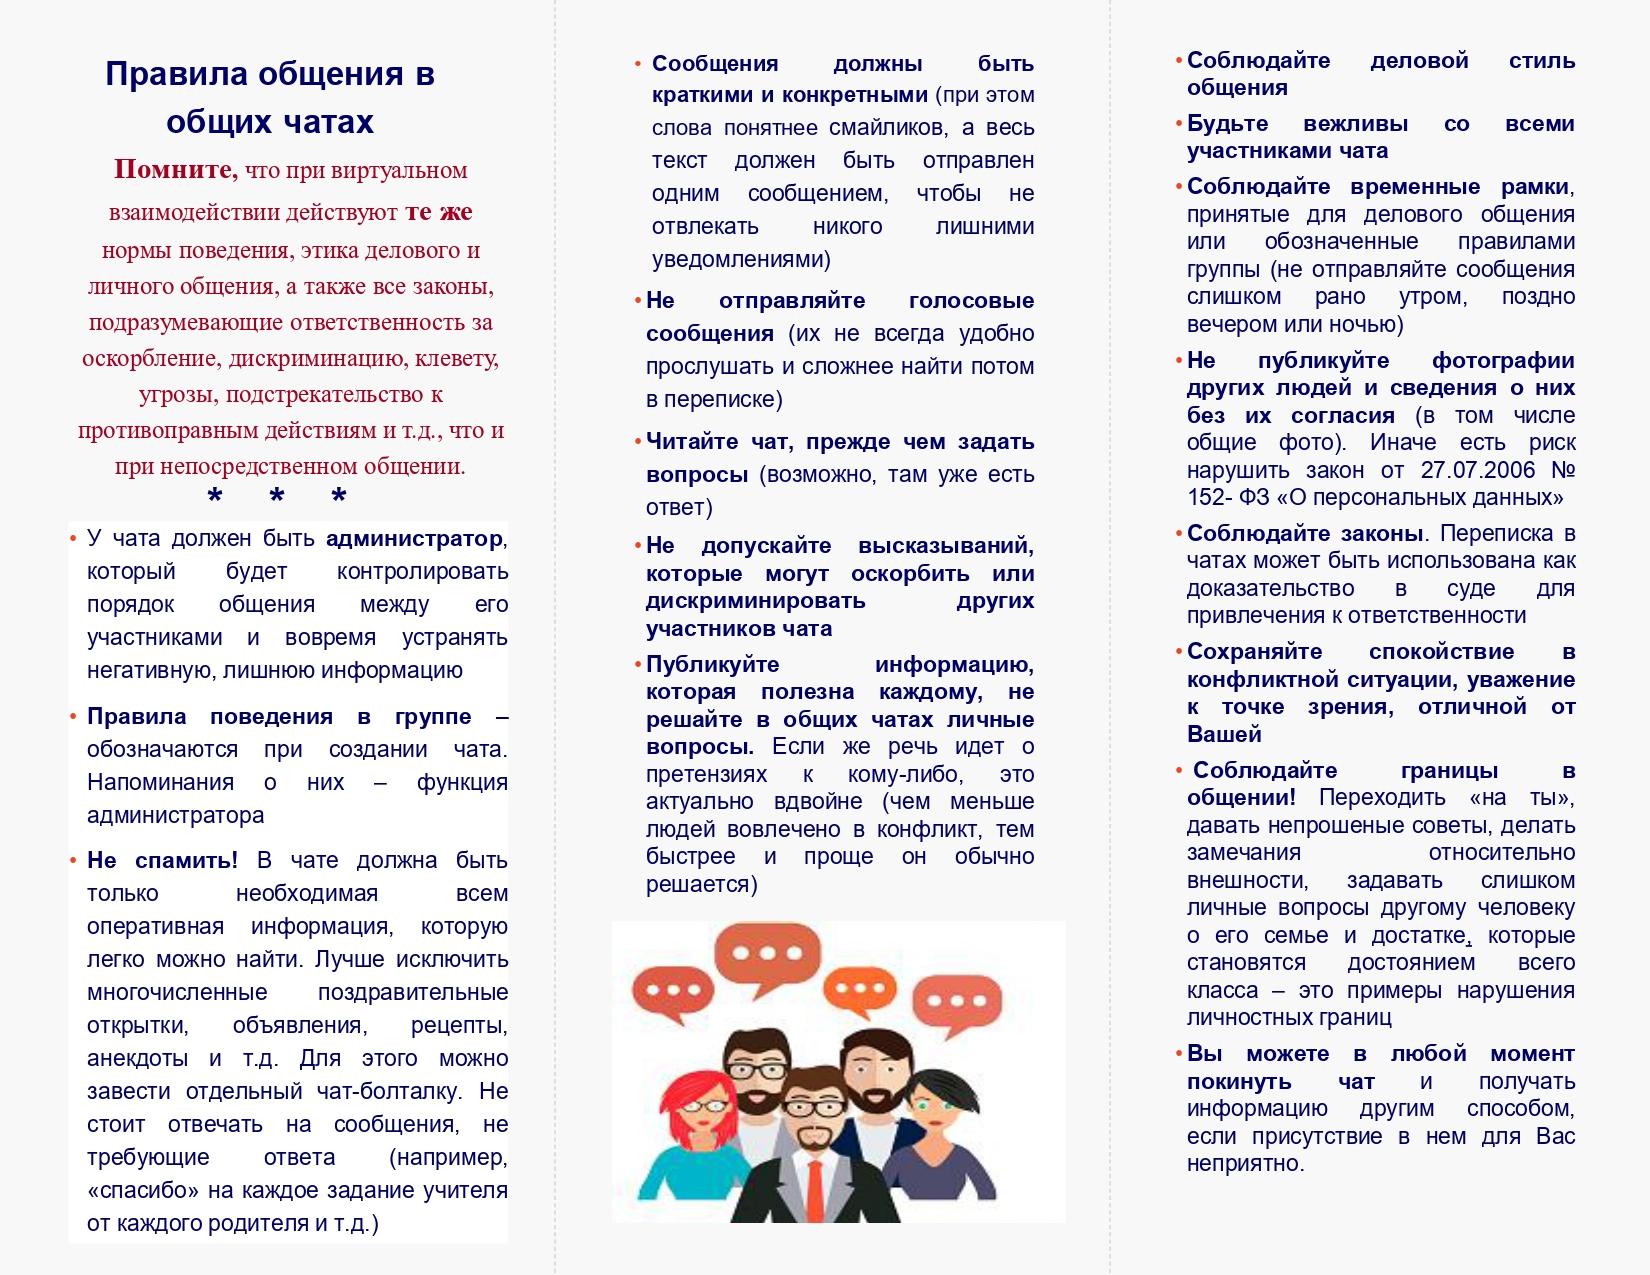 Pravila-obshheniya-v-roditelskih-chatah_page-0002.jpg